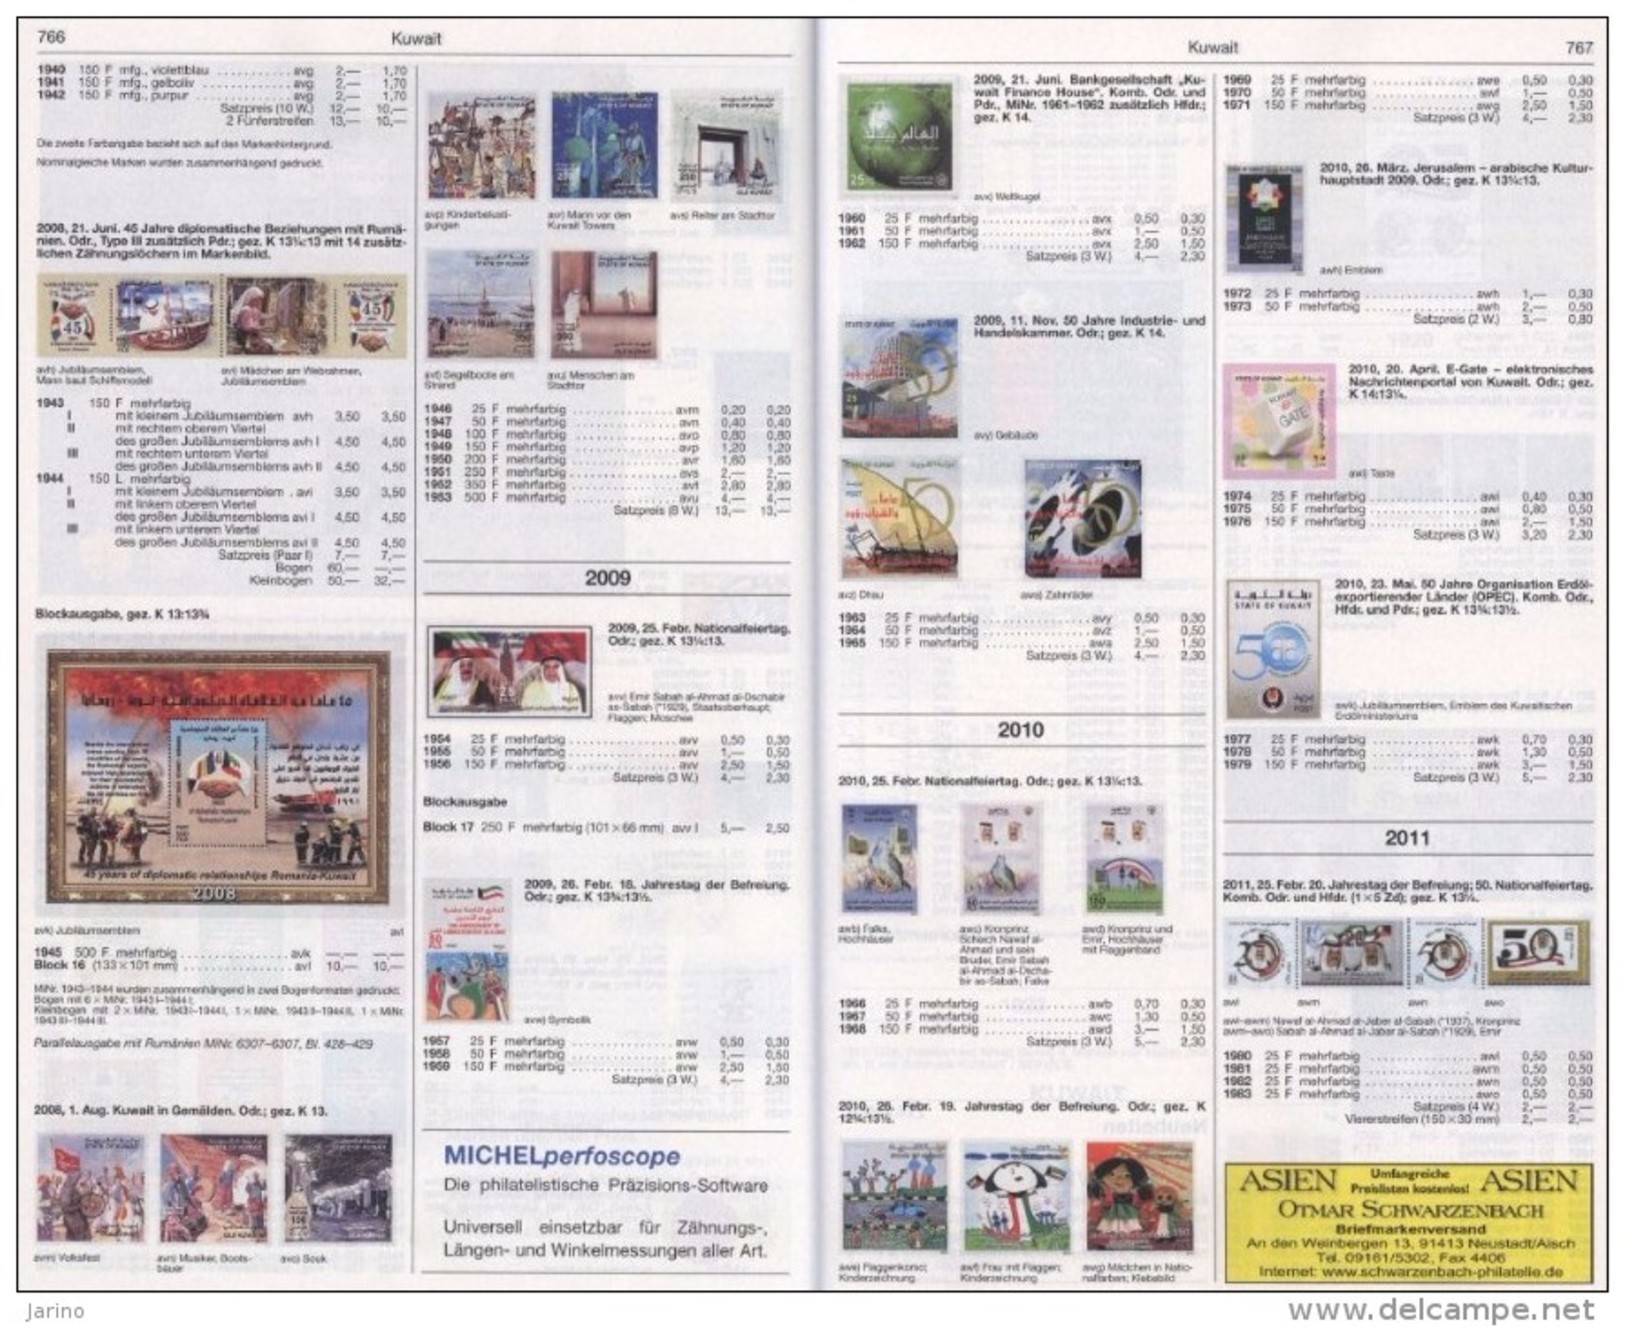 Katalog Michel Naher Osten 2013,1455 Farbseiten DVD-R Israel Verein. Arab. Emirate Dubai Kuwait Jemen Libanon Palästine - Sonstige - Asien